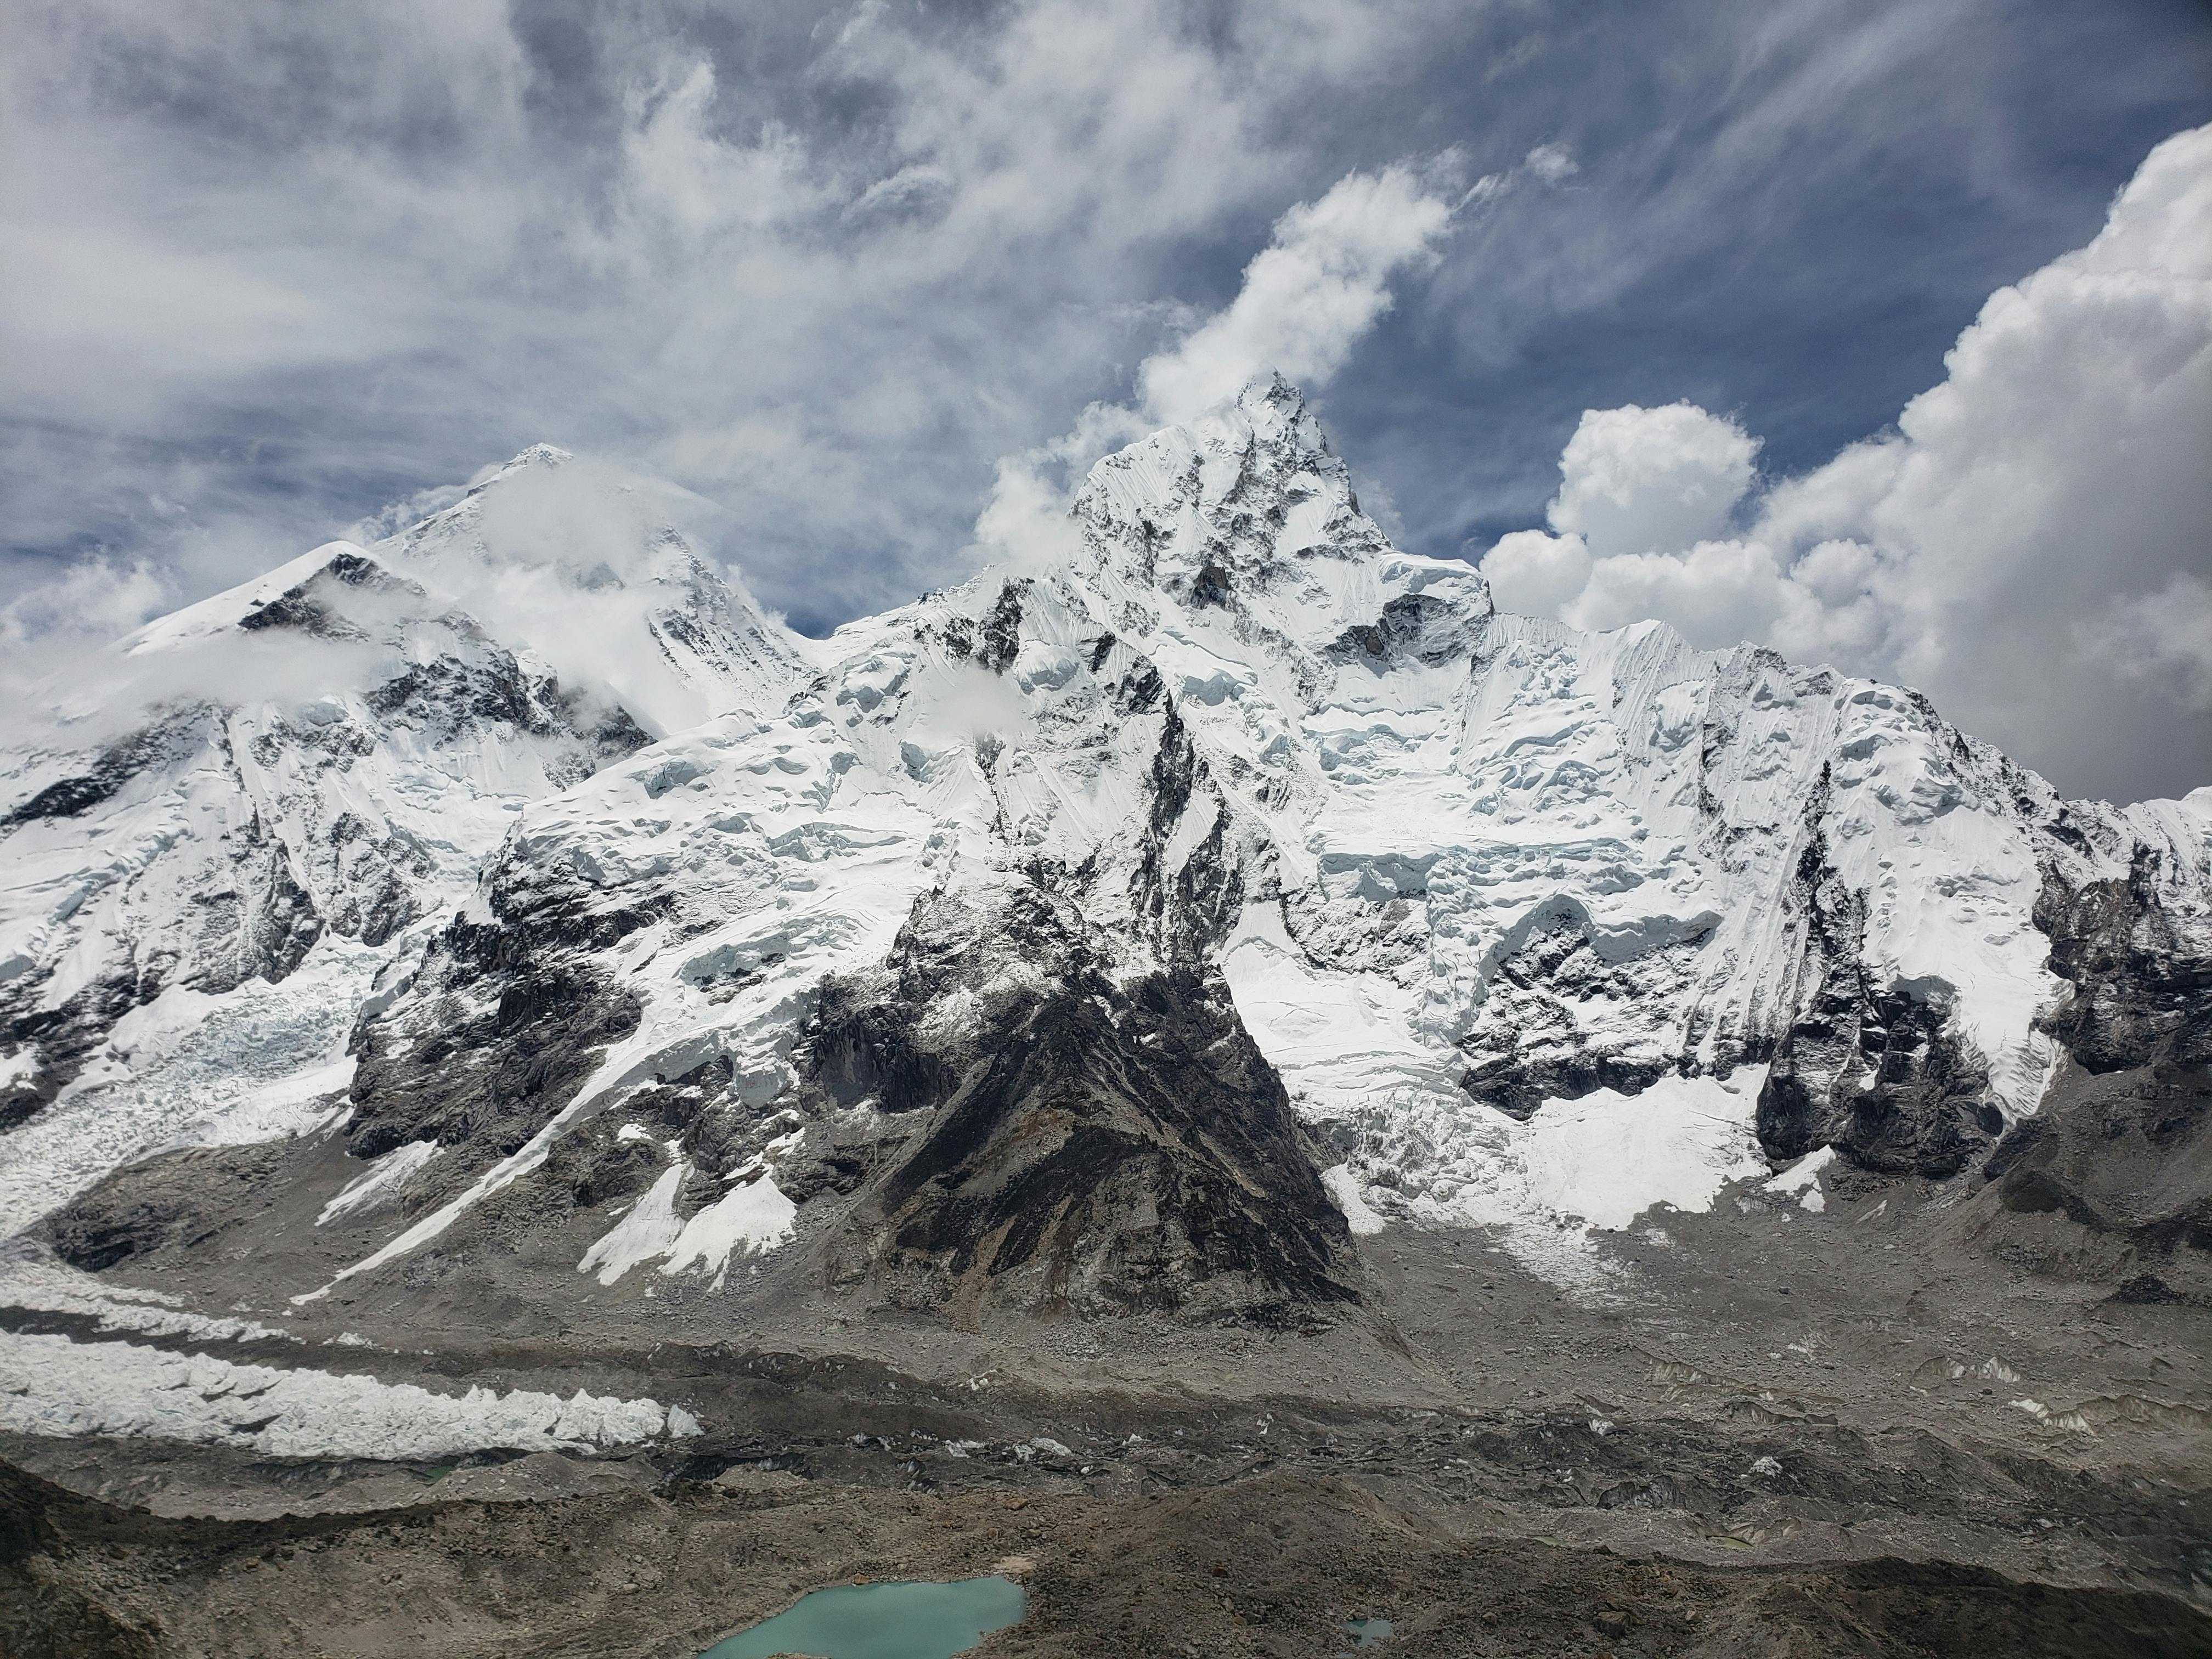 Hình nền  1920x1080 px đỉnh Everest thiên nhiên 1920x1080  wallhaven   655728  Hình nền đẹp hd  WallHere